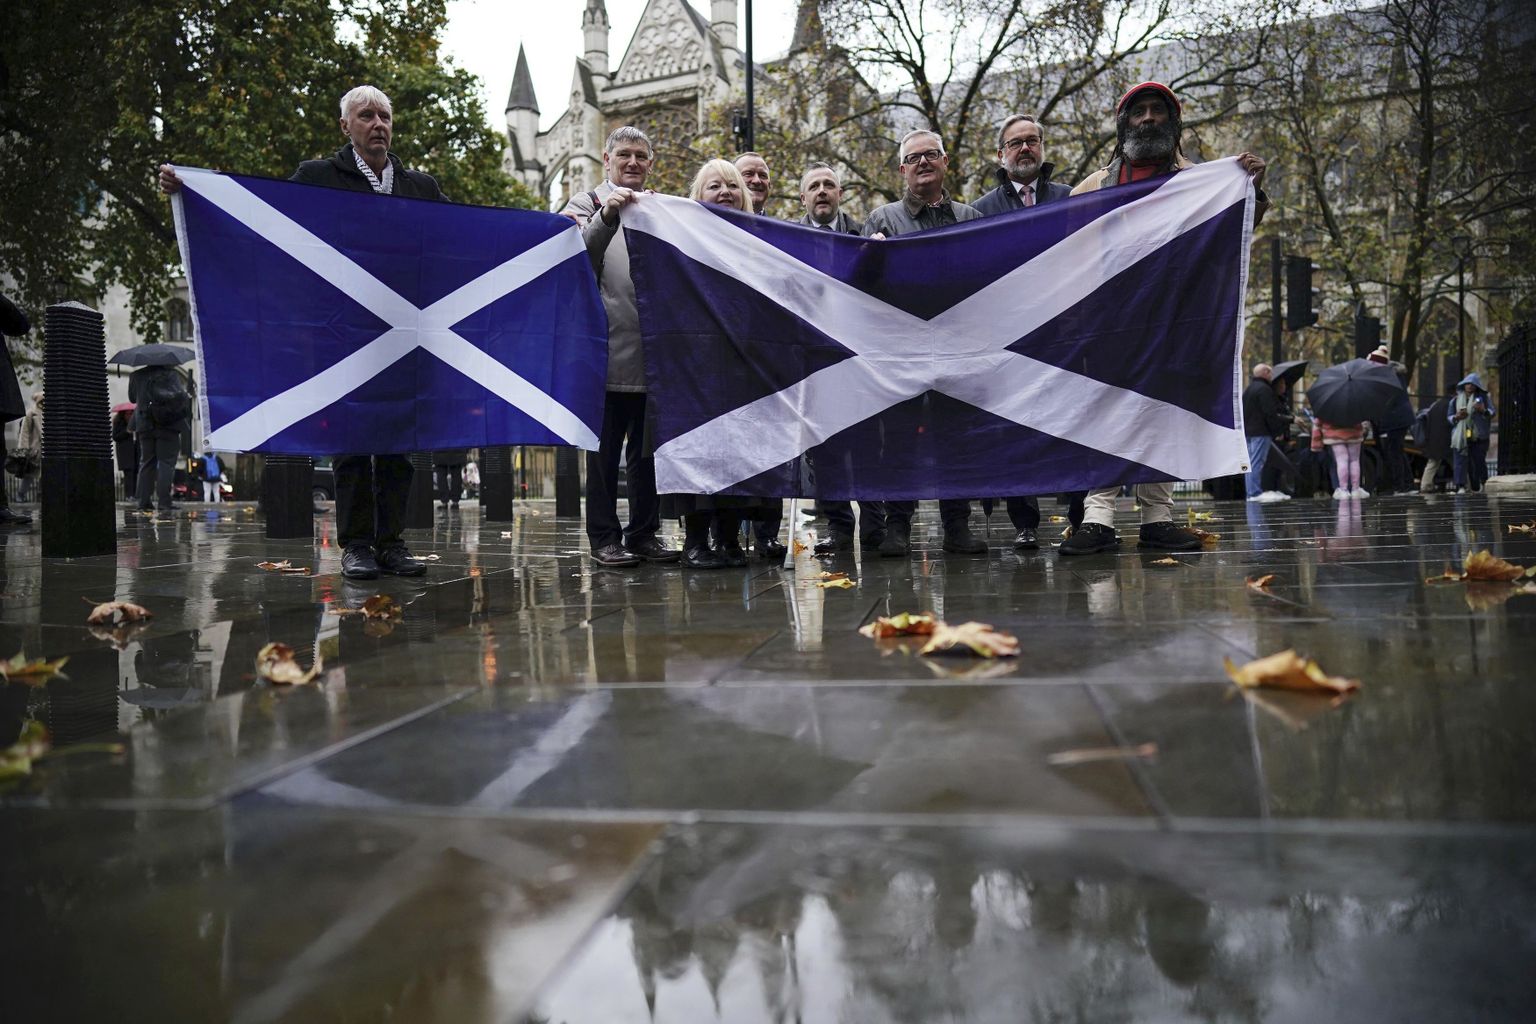 Inimesed ülemkohtu ees Šoti lippudega. Pilt on illustratiivne.